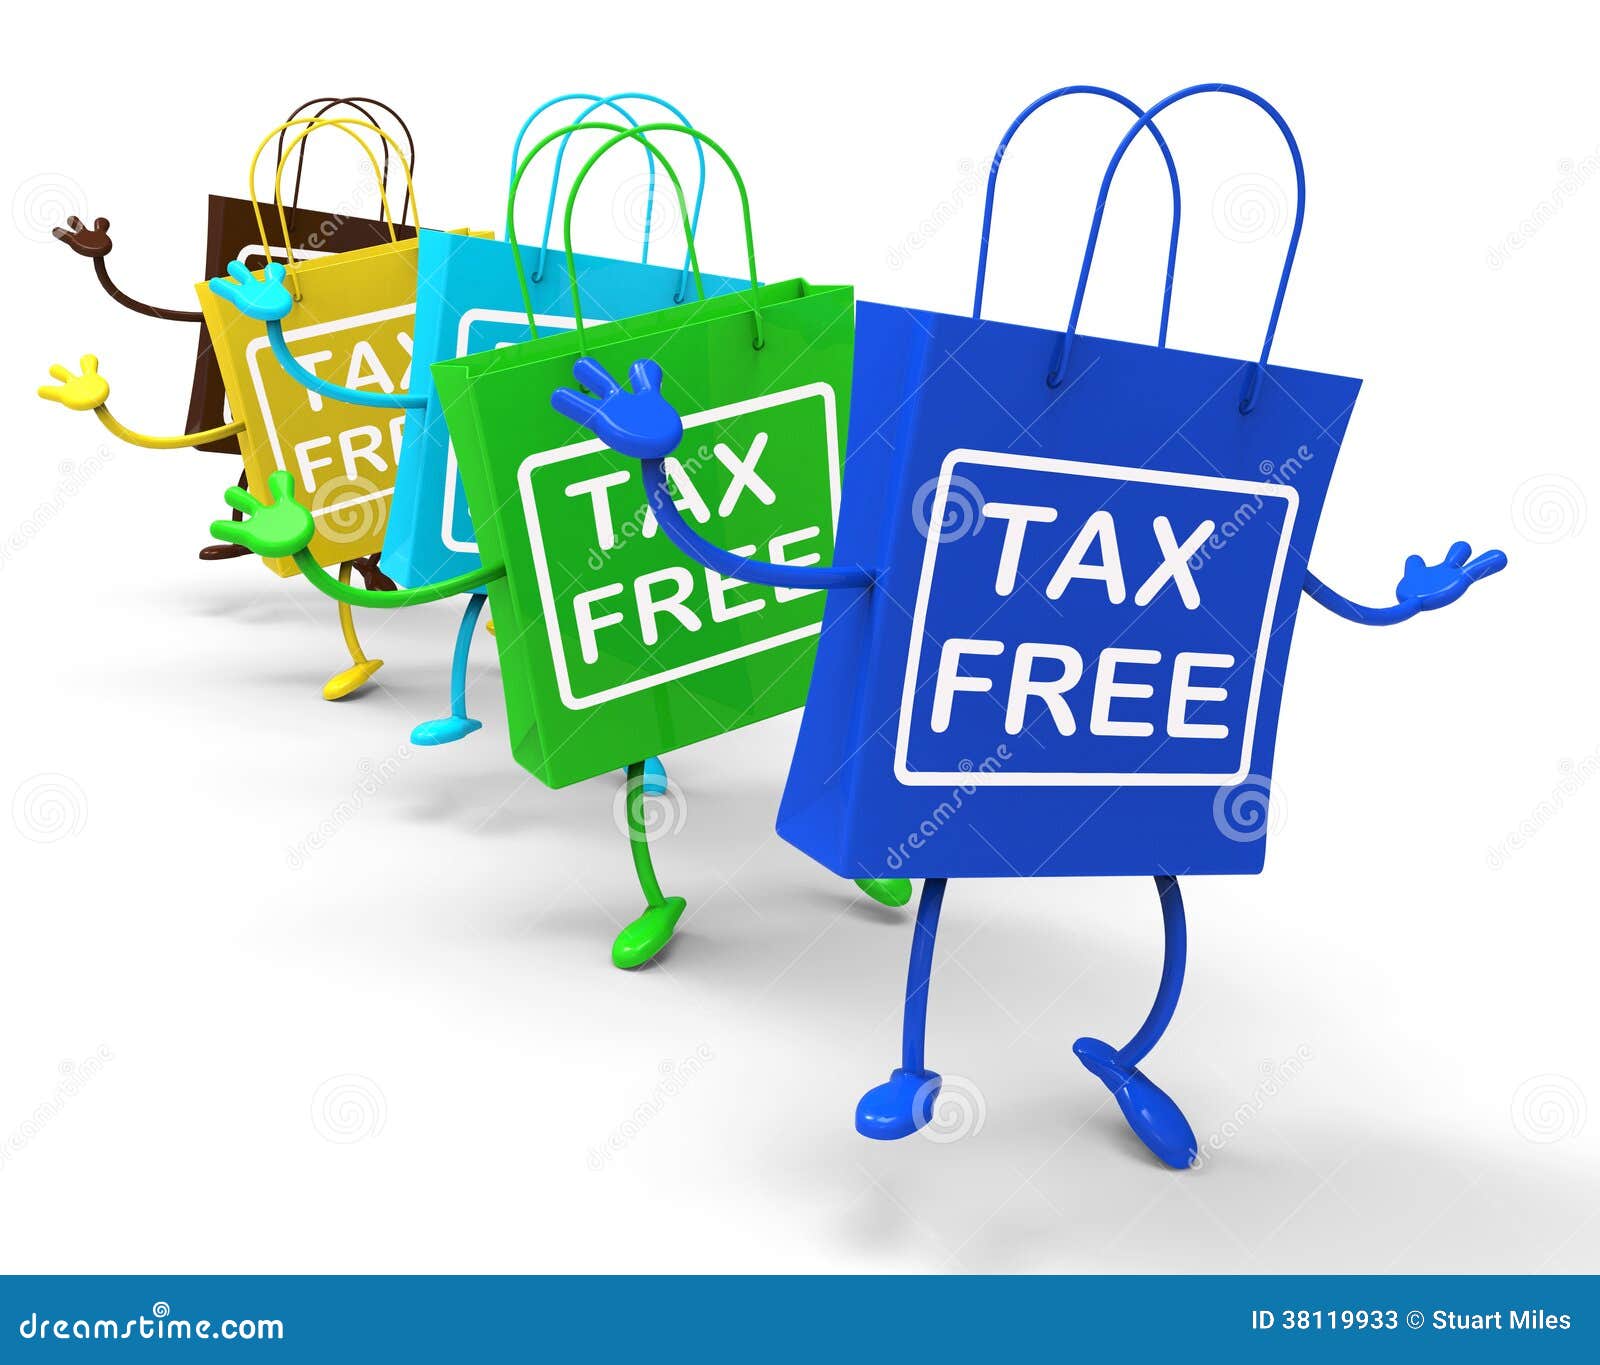 tax free bags represent duty exempt discounts